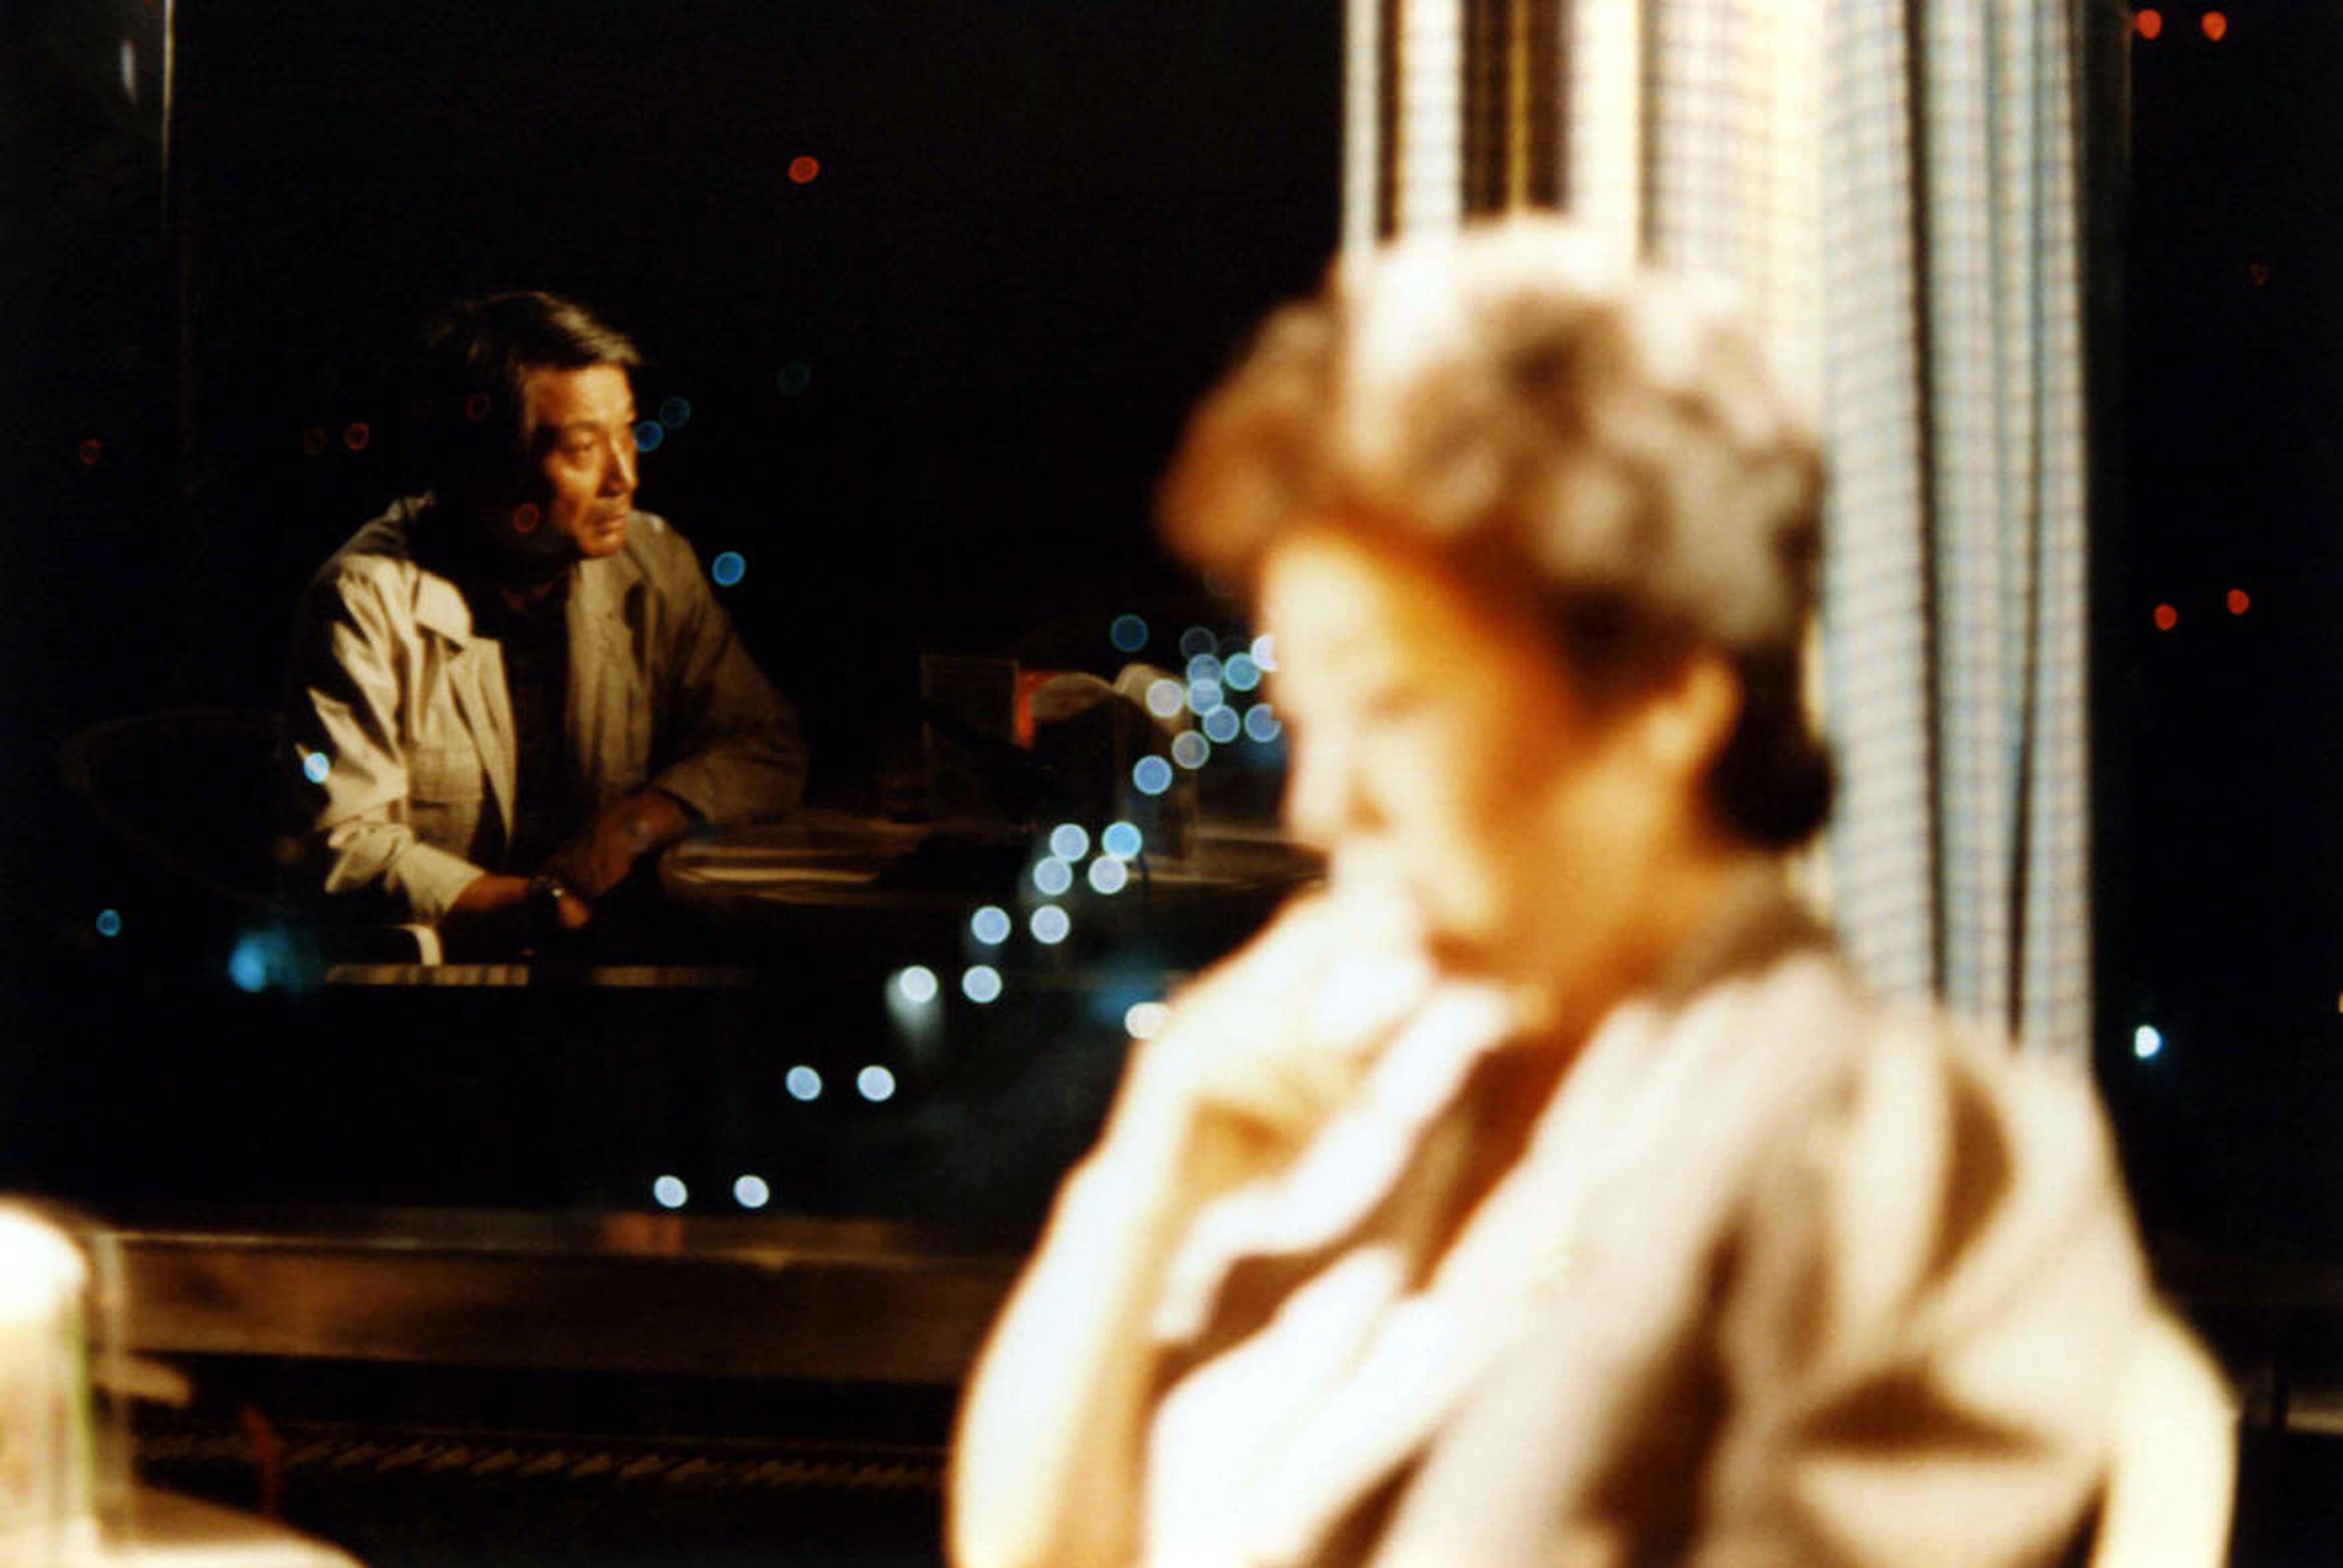 【1980-1990】《离别泪》 (1986)导演林权泽。该片入围第36届柏林电影节主竞赛单元。